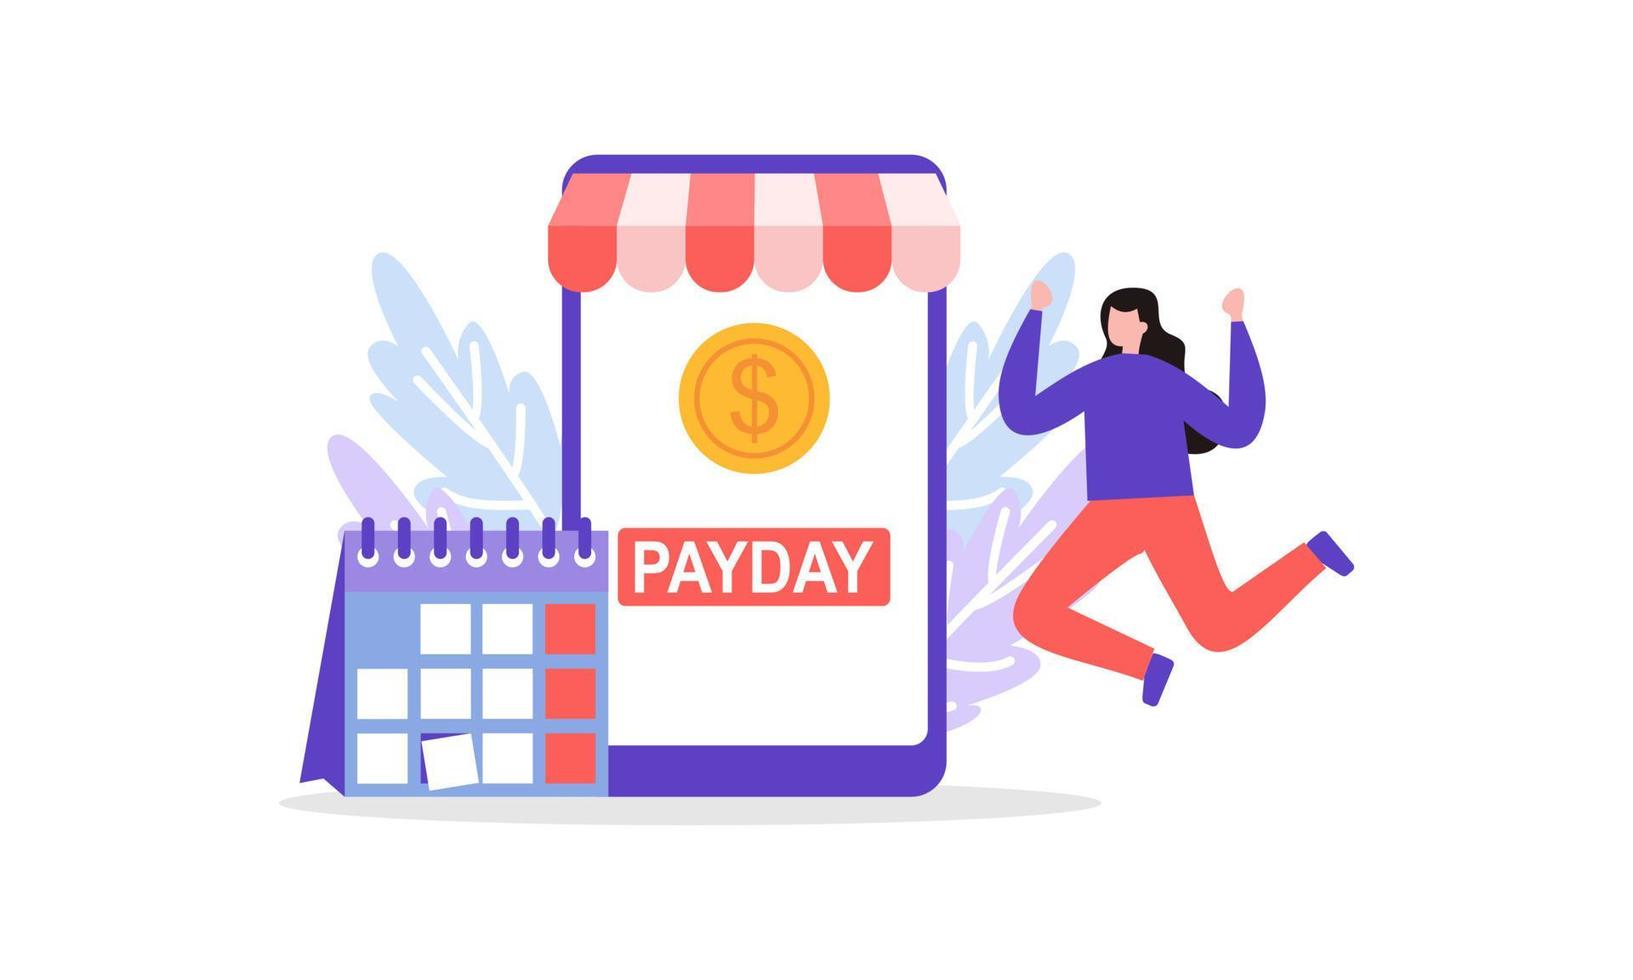 vector de concepto de ilustración de venta de día de pago